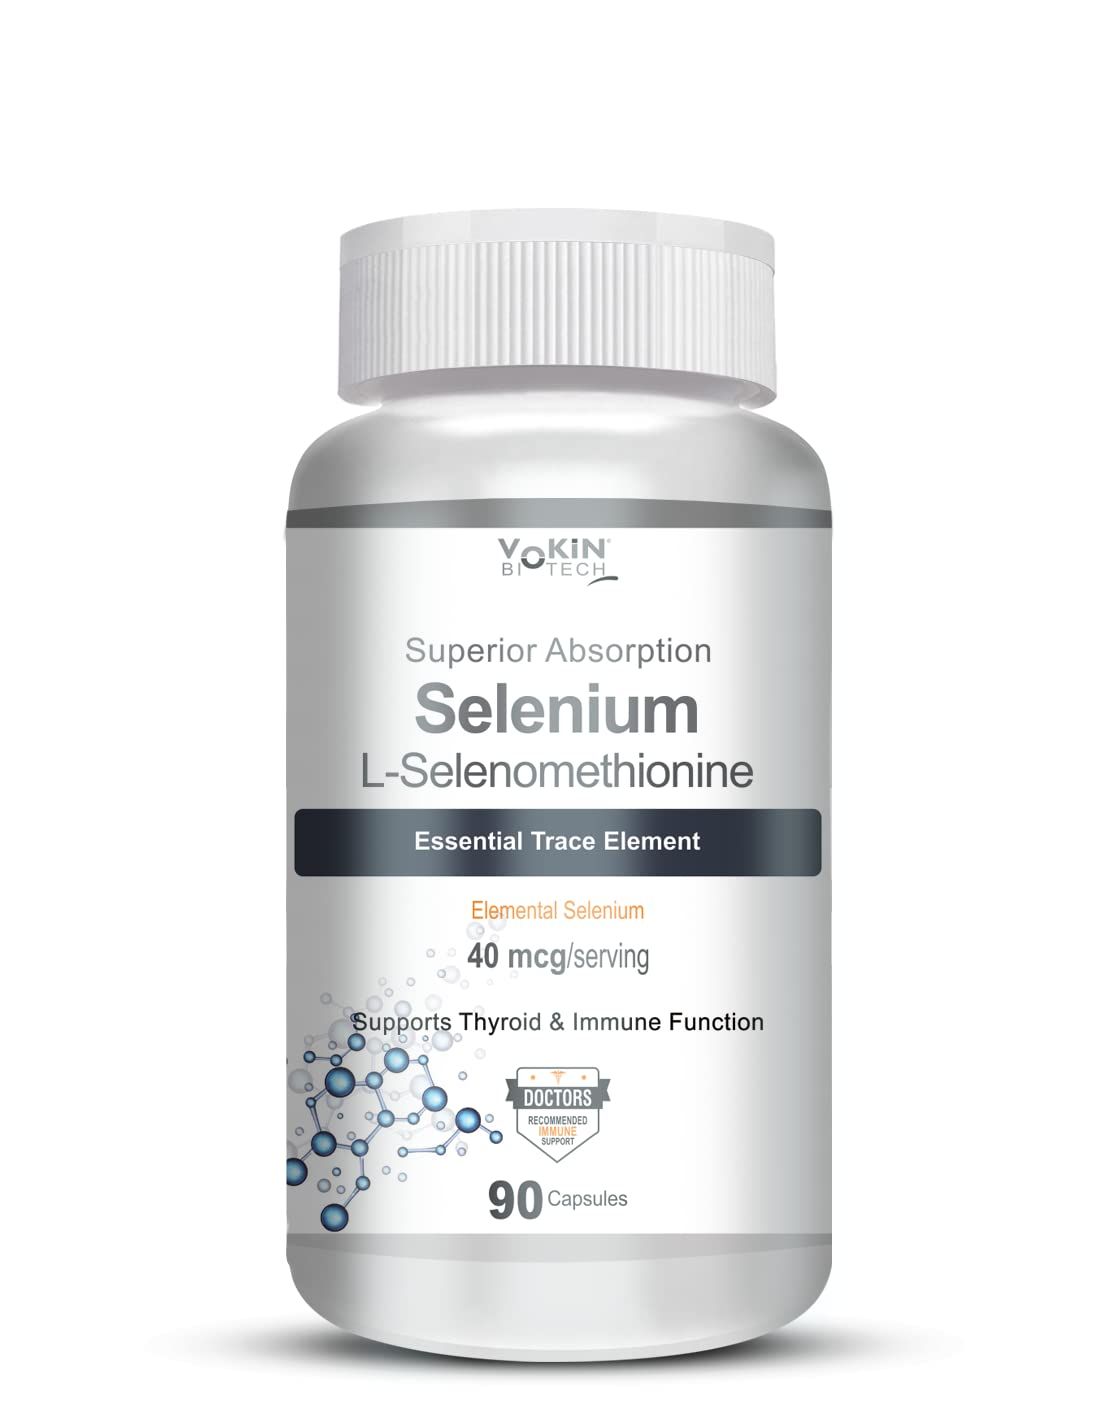 Vokin Biotech Selenium Capsules Image